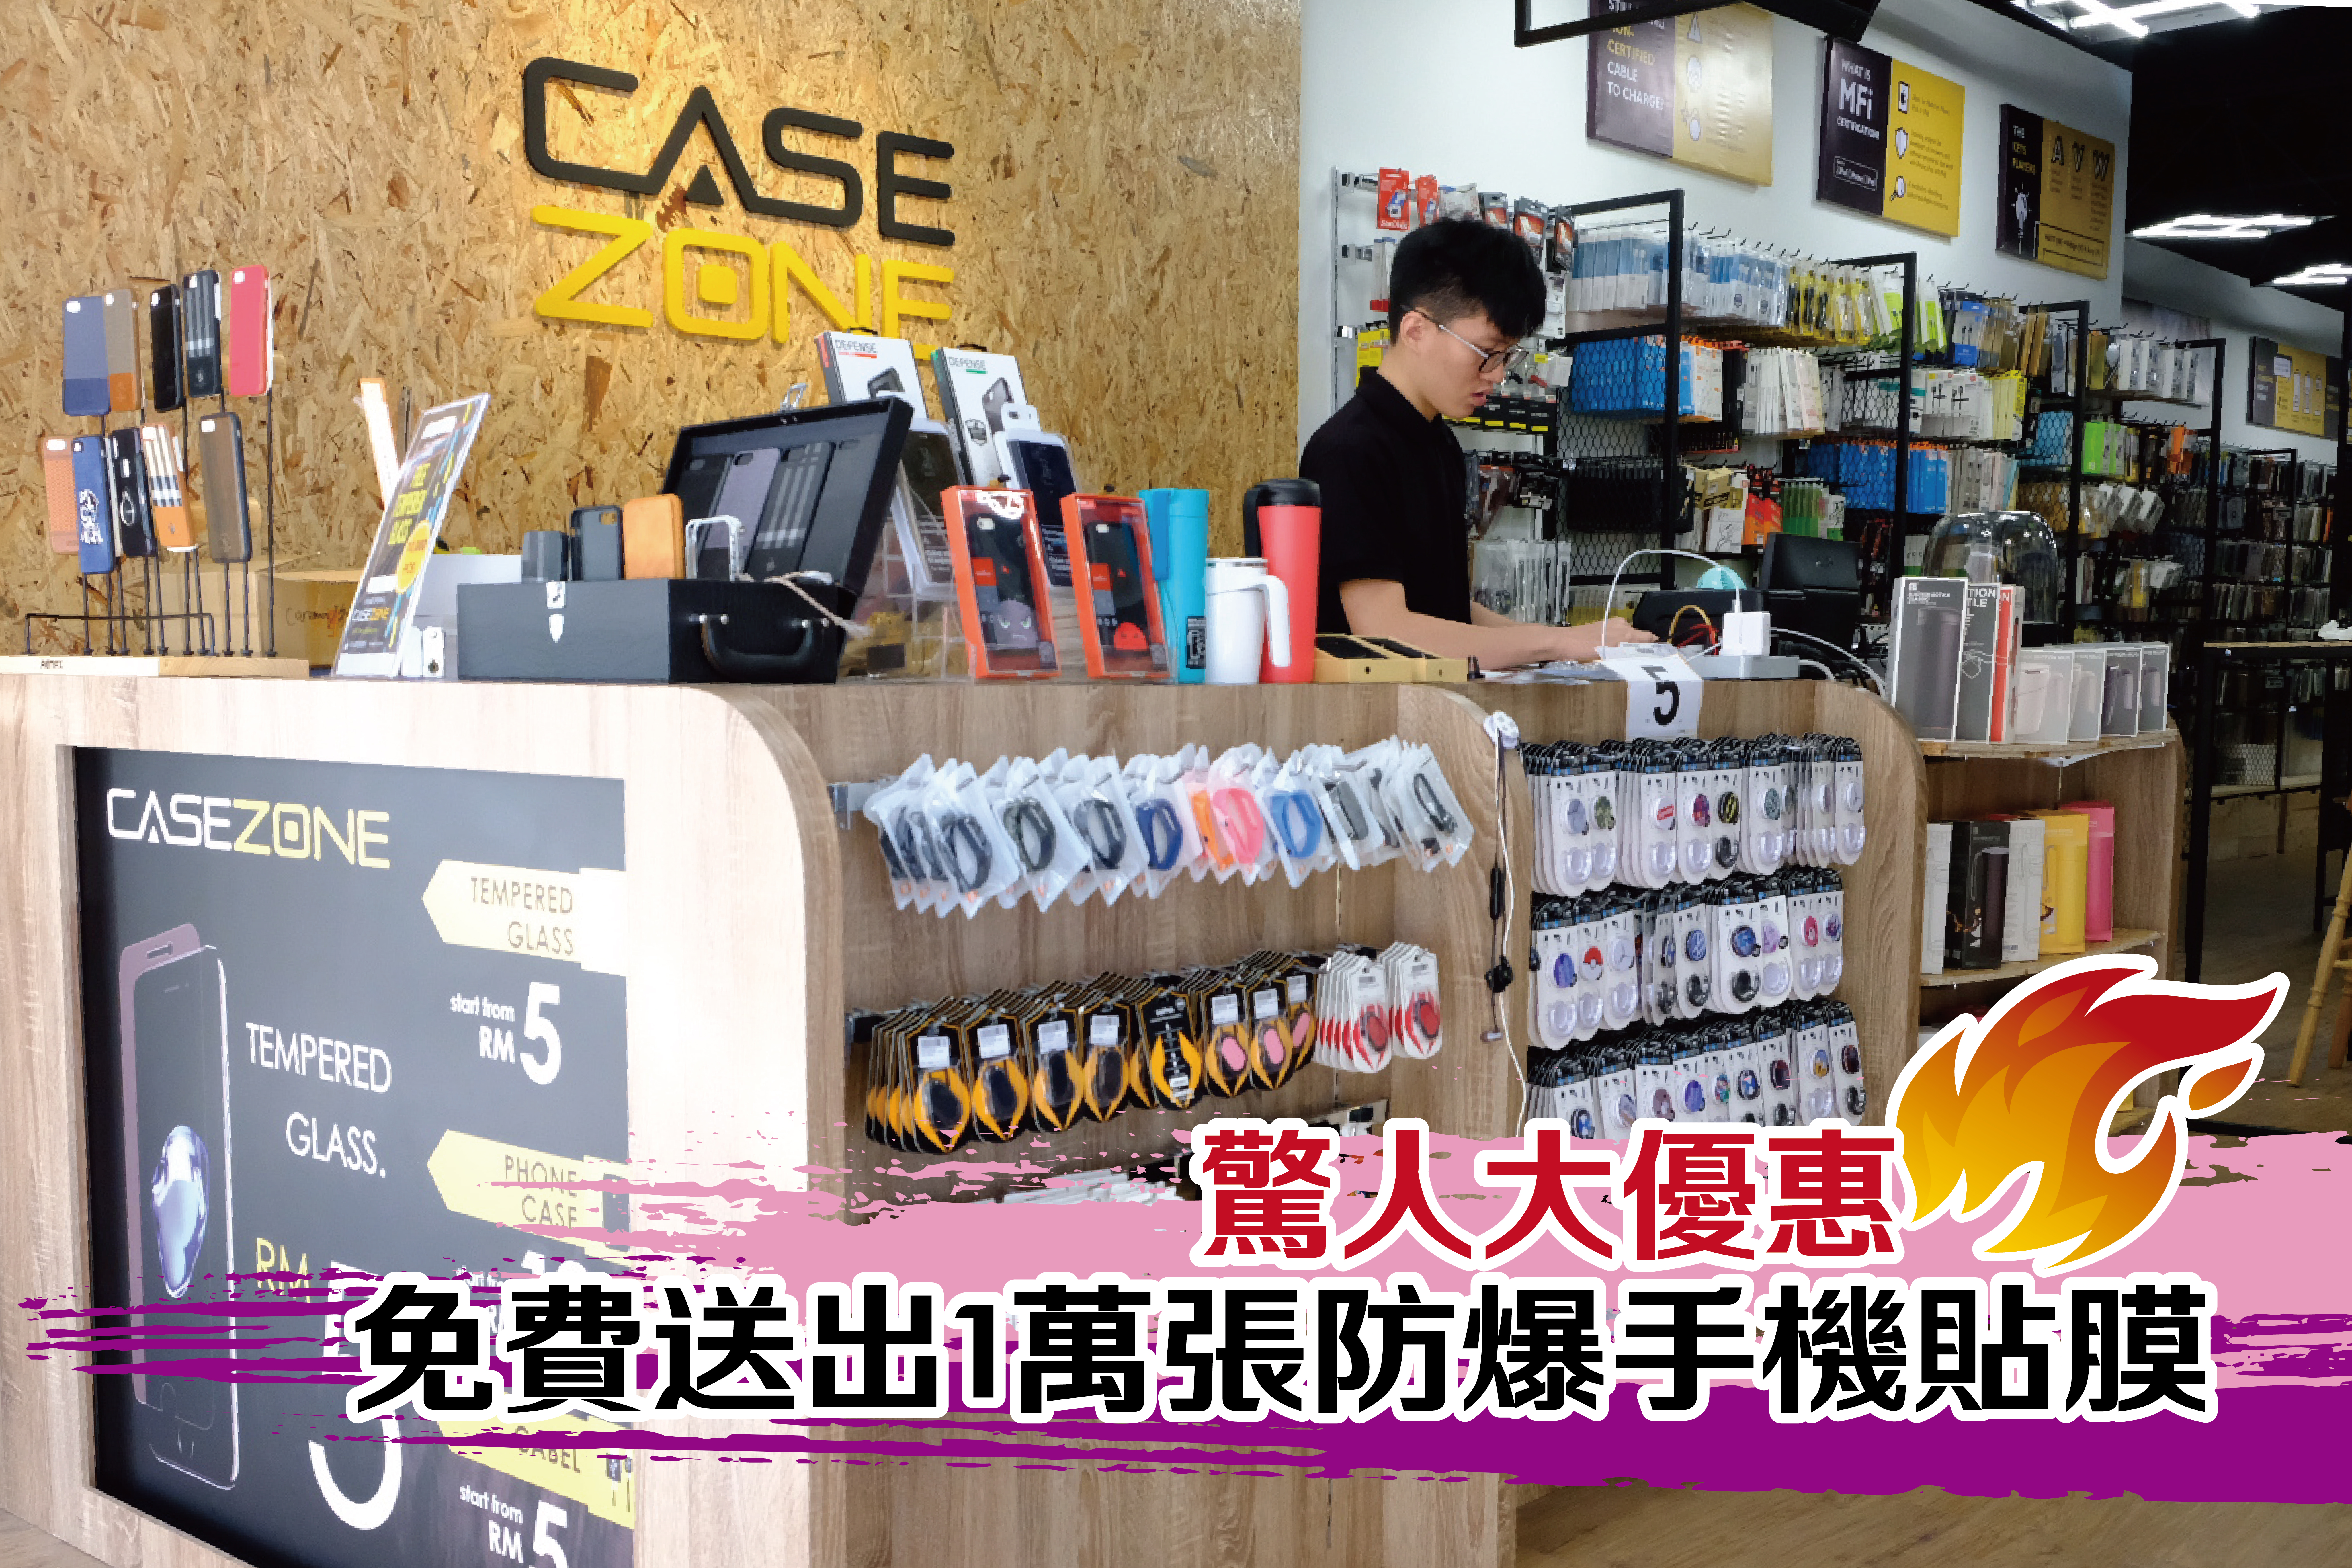 FREE 📱📱 TEMPERED GLASS！全城最火红的超低价手机配件CASE ZONE Sunway 新分店，开张啦！